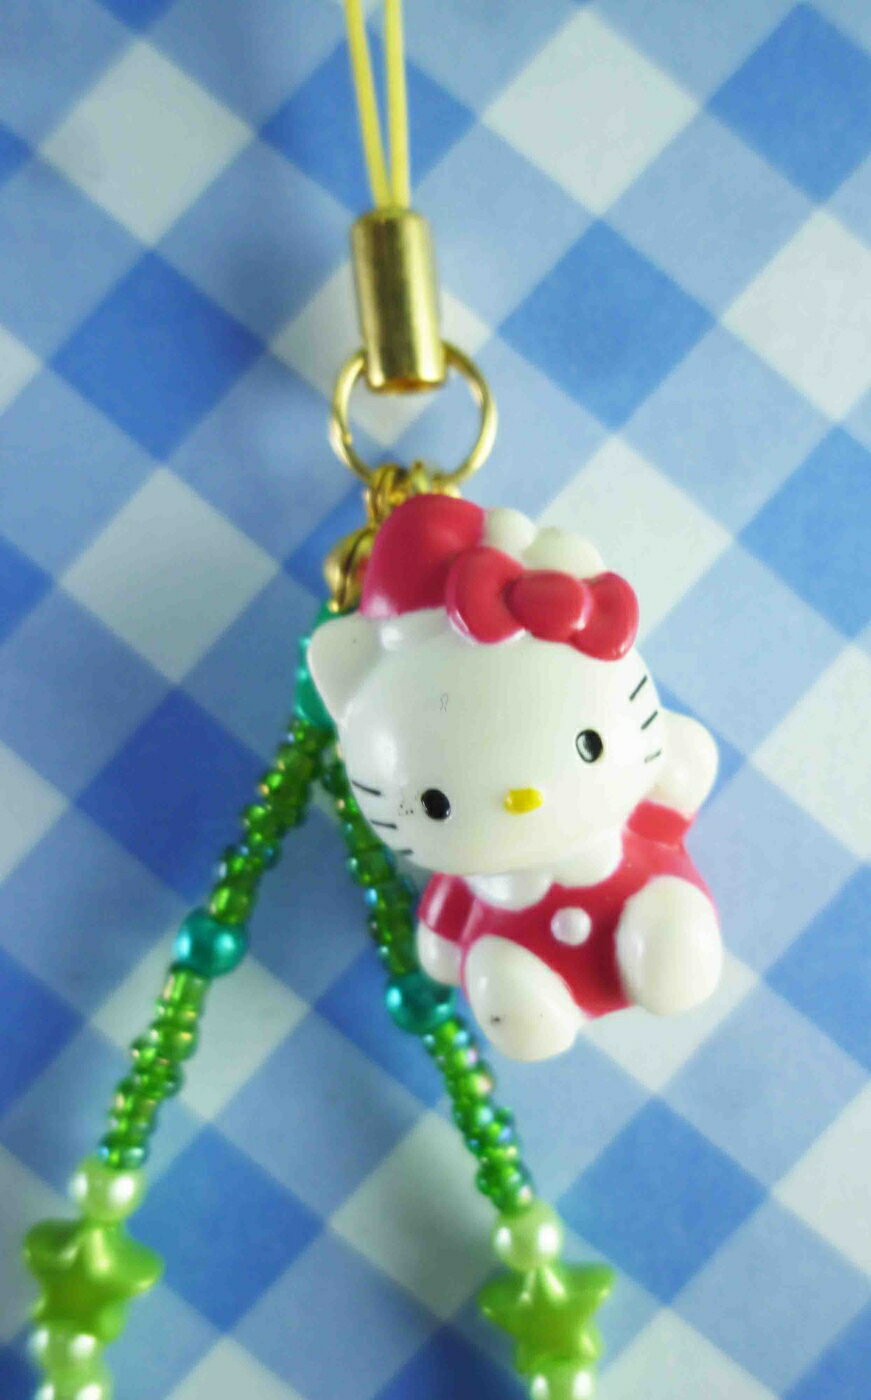 【震撼精品百貨】Hello Kitty 凱蒂貓 限定版手機吊飾-聖誕綠戴帽 震撼日式精品百貨